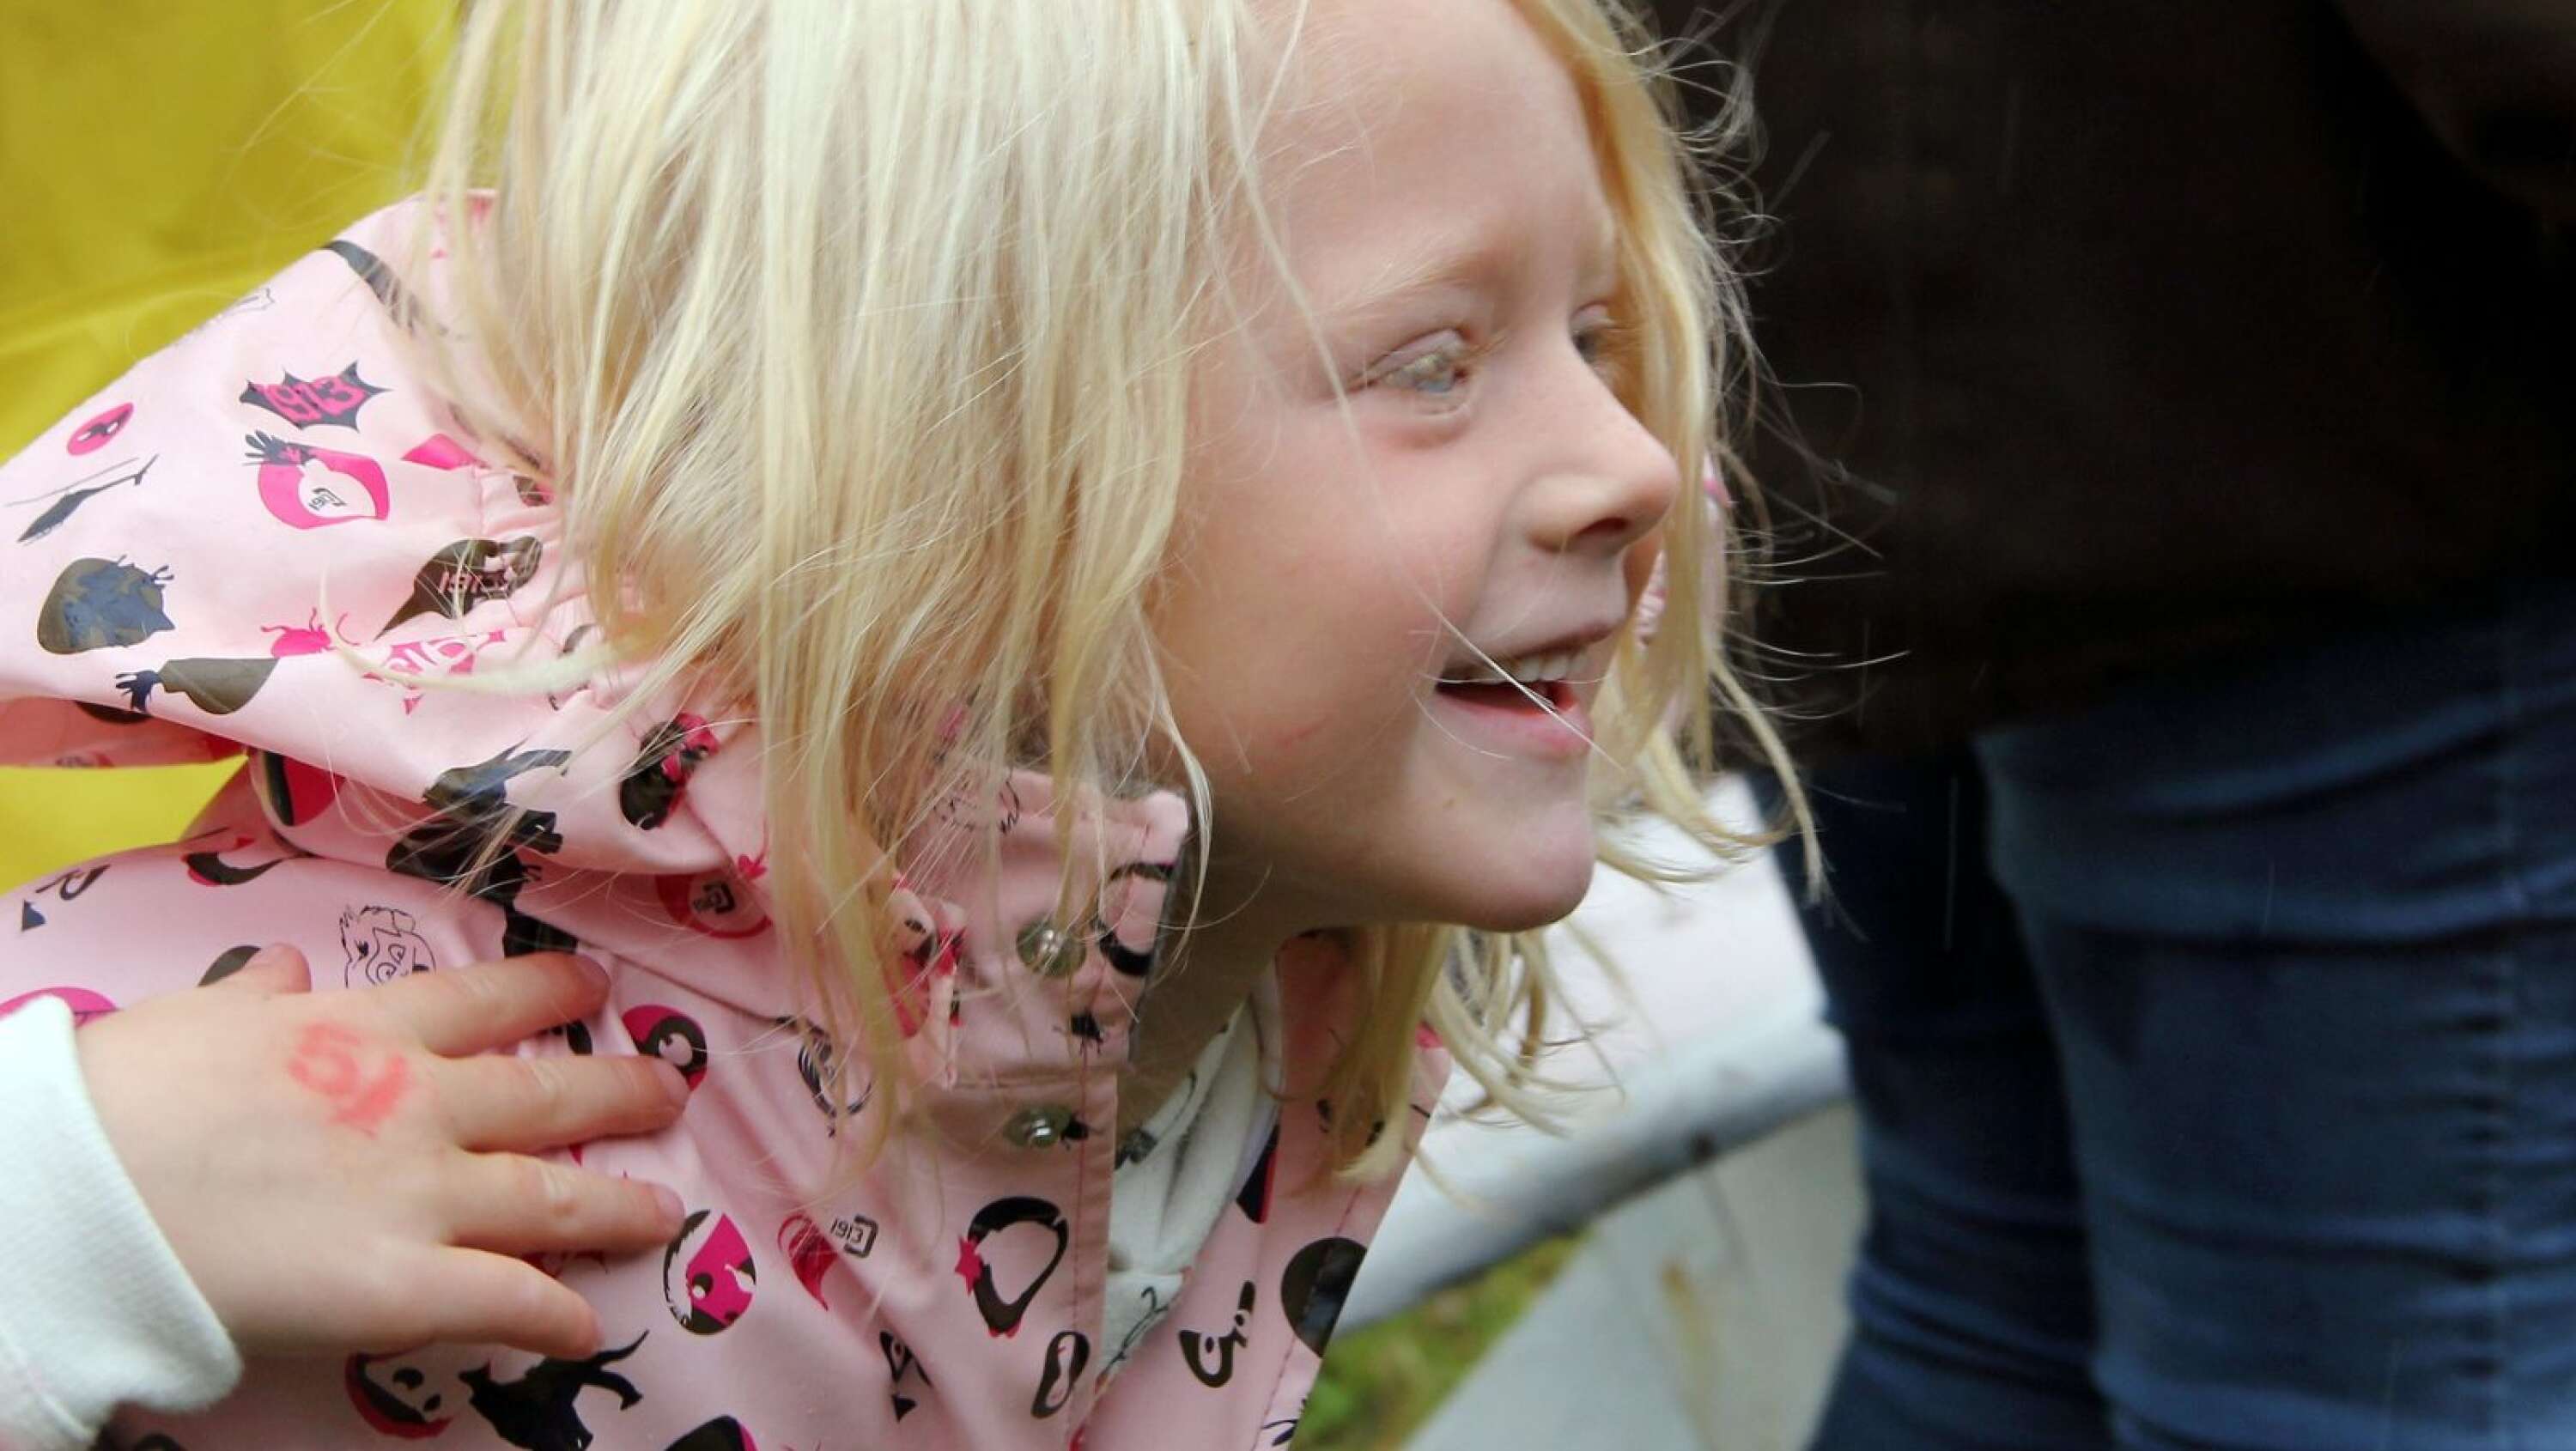 Huvud, axlar, knä och tår. Astrid Andreasson, 6 år, var med på noterna när Mora Träsk uppträdde. 